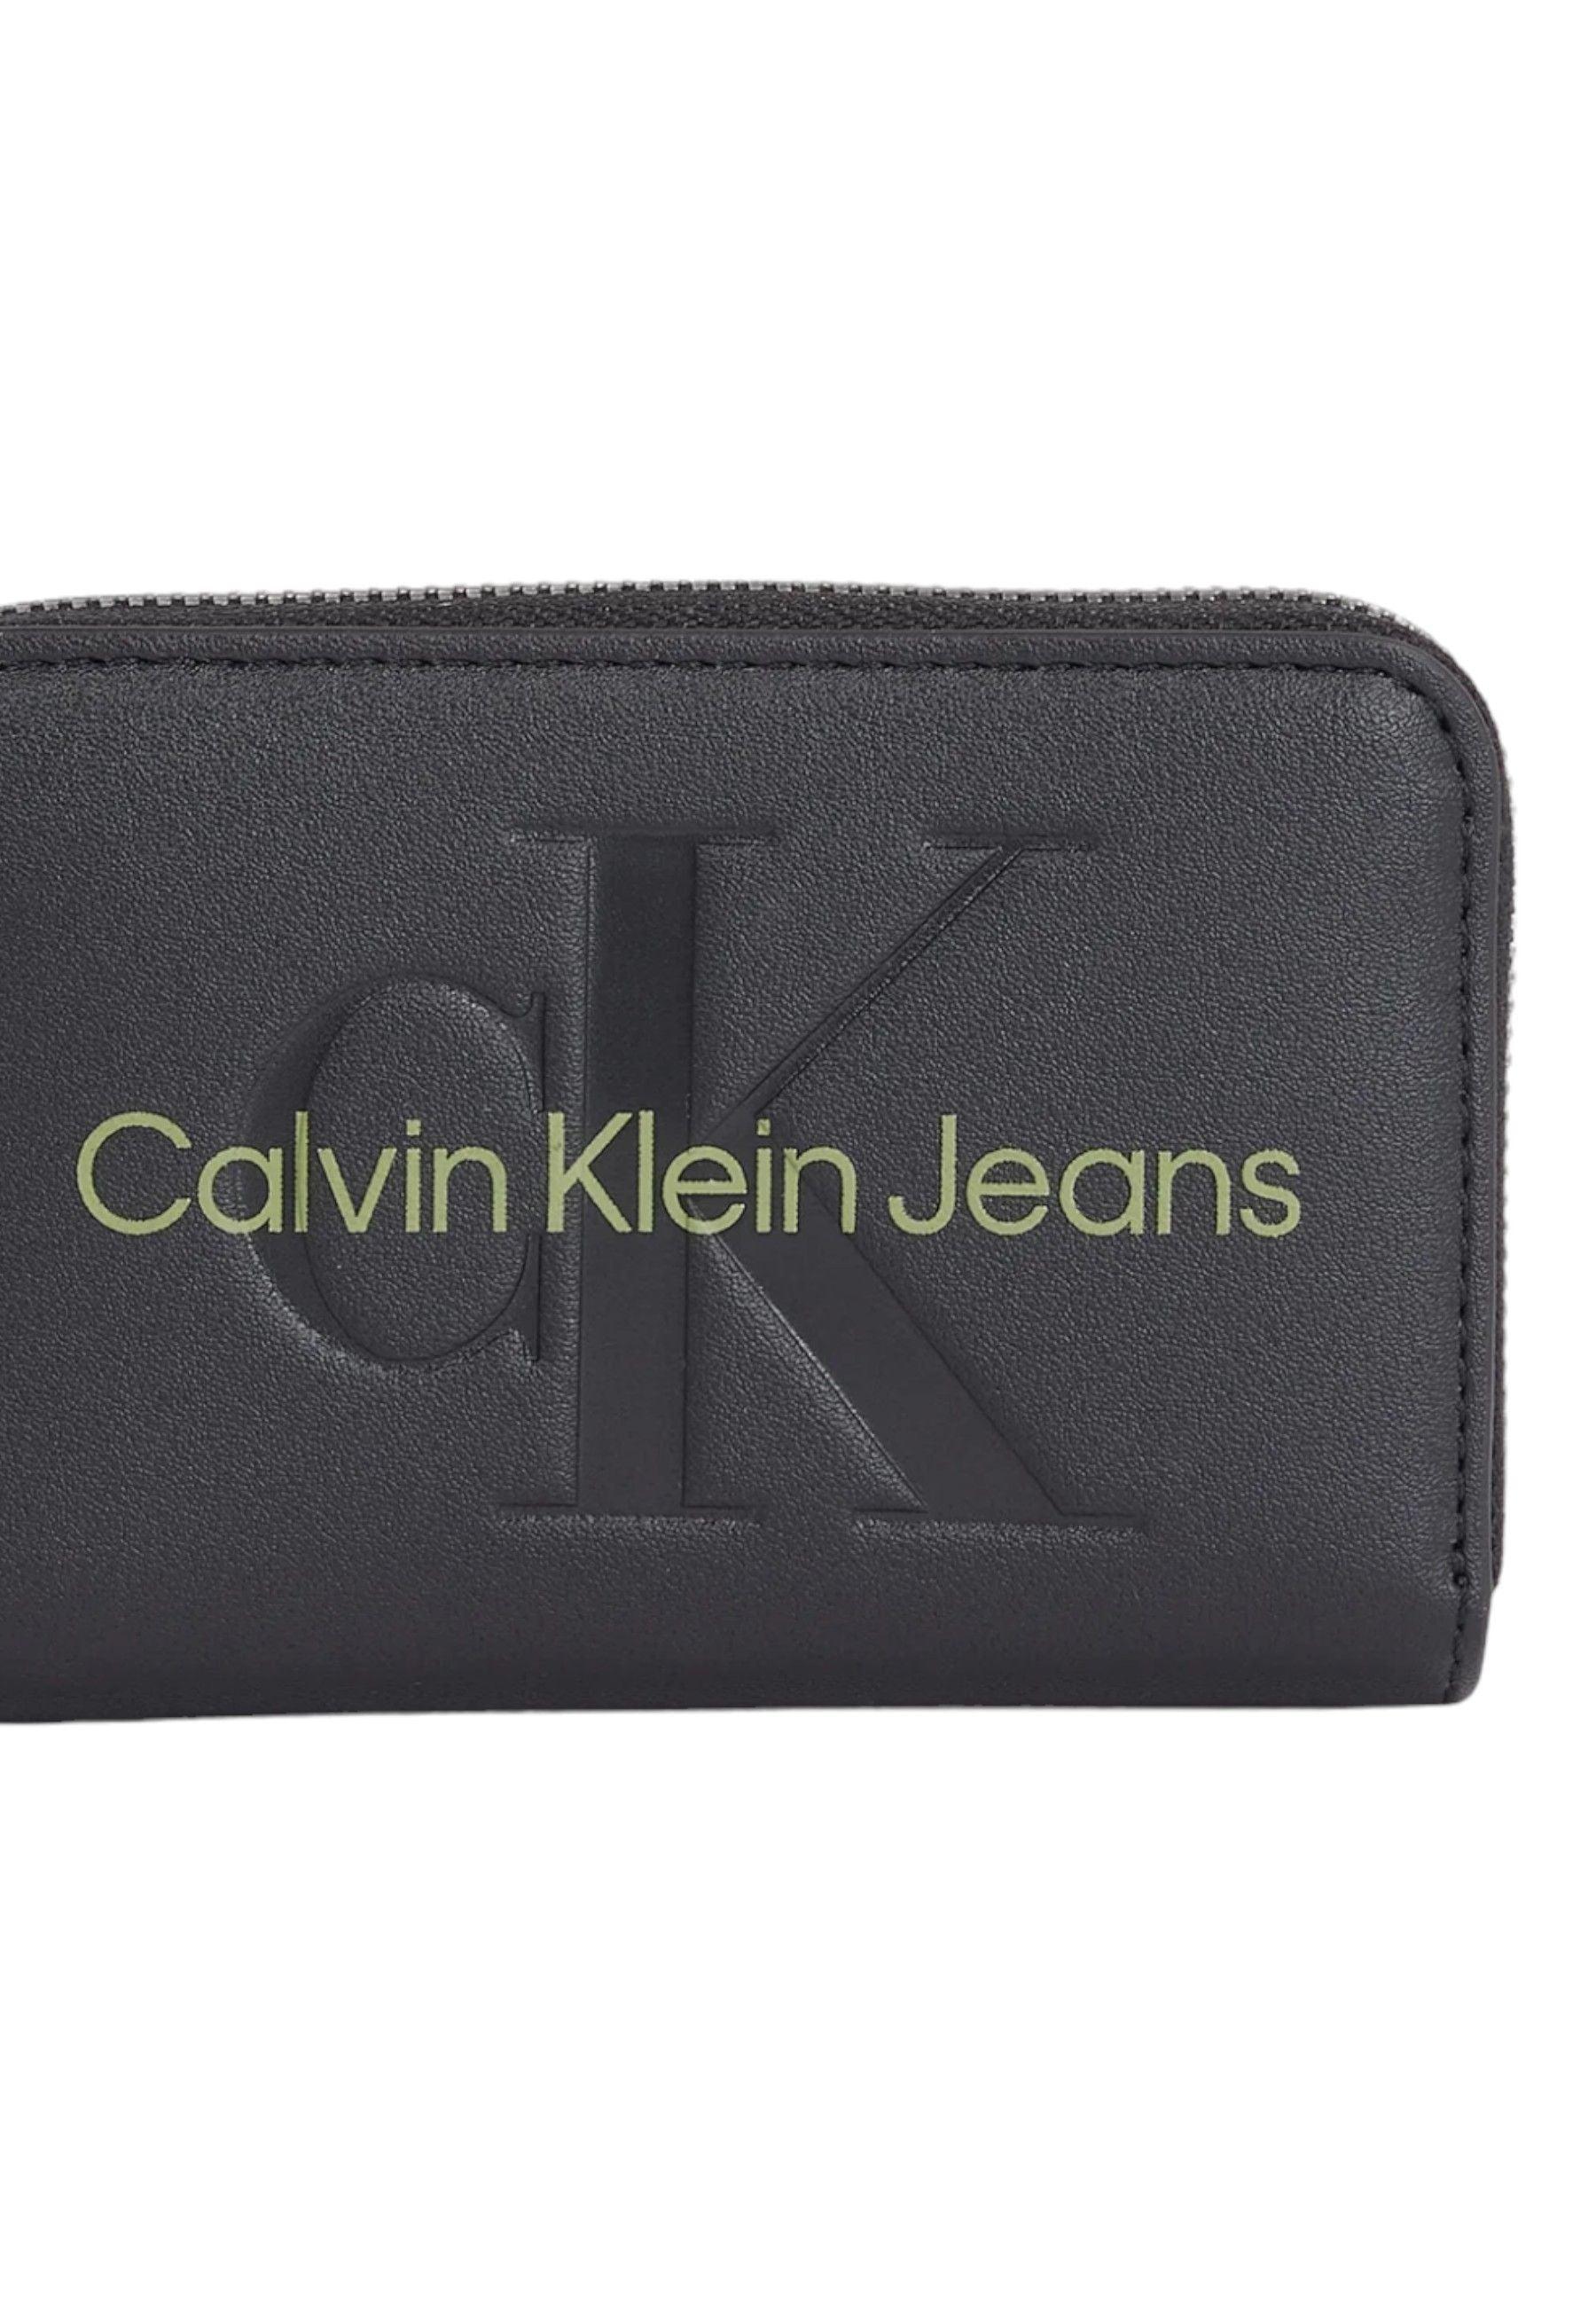 CALVIN KLEIN Portafoglio Donna Black K60K607229 - Sandrini Calzature e Abbigliamento